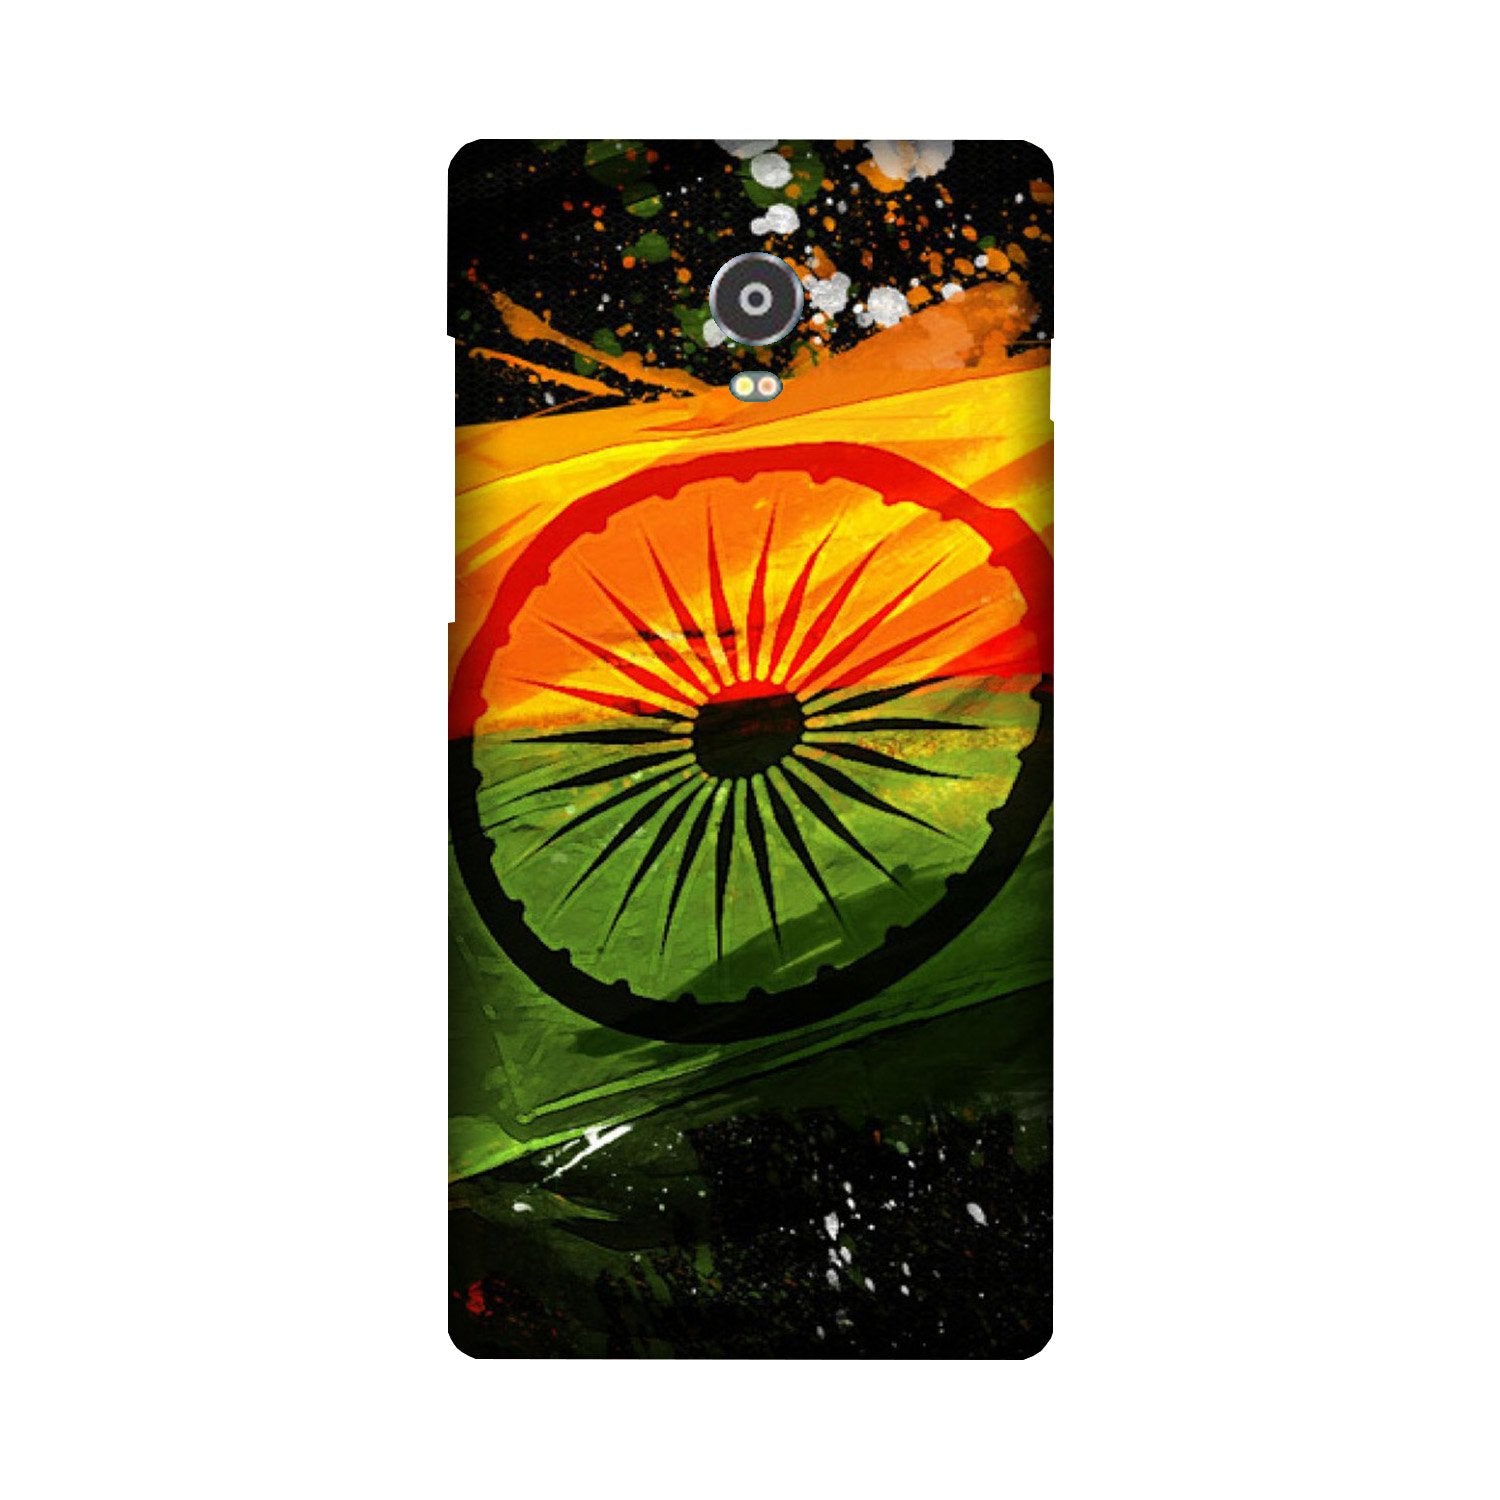 Indian Flag Case for Lenovo Vibe P1(Design - 137)